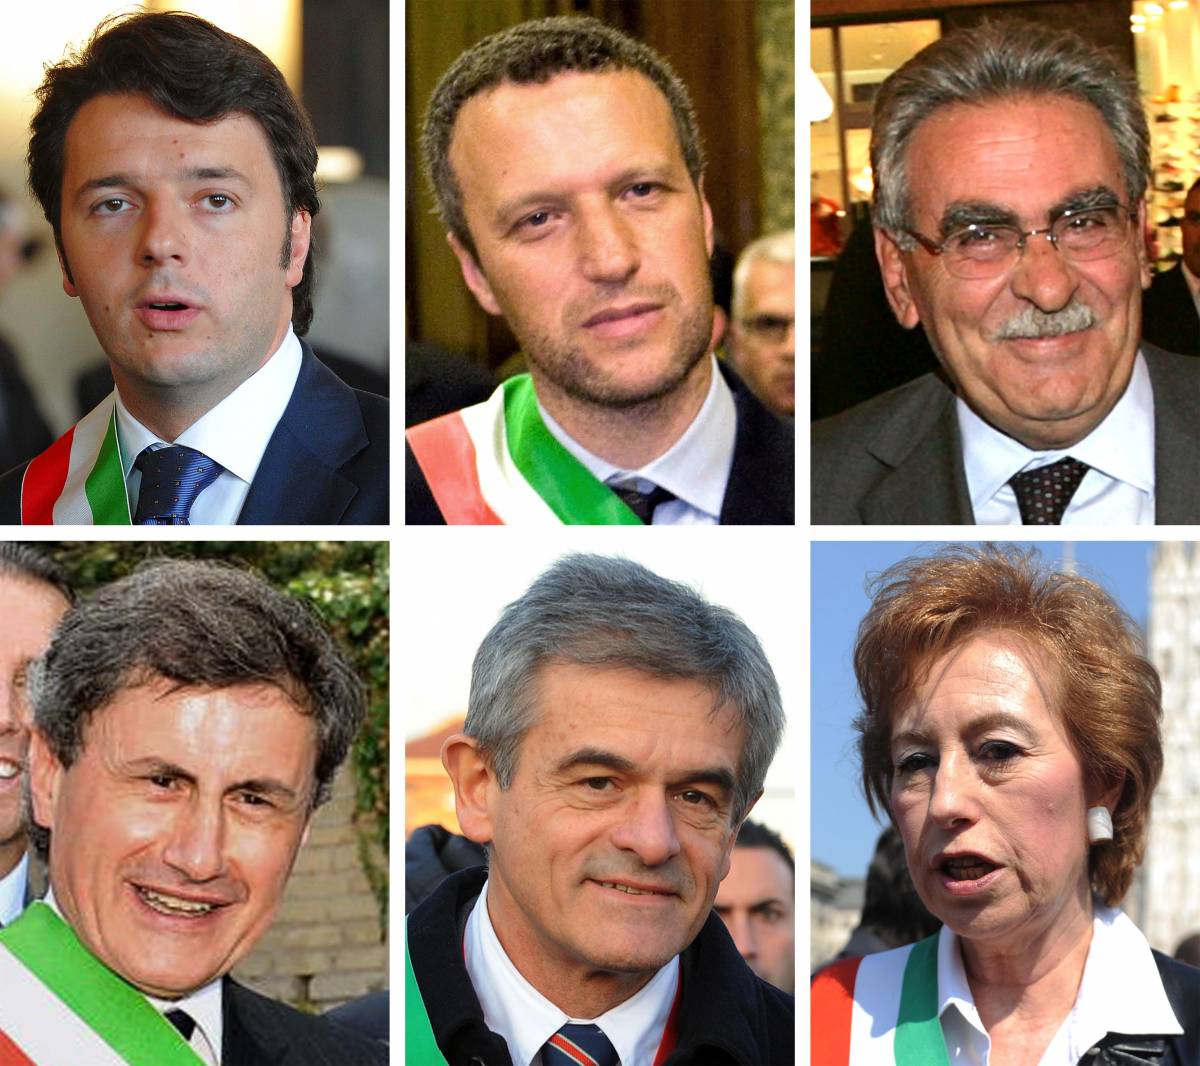 Il sindaco più amato? Il ribelle Renzi 
Al secondo posto c'è il leghista Tosi